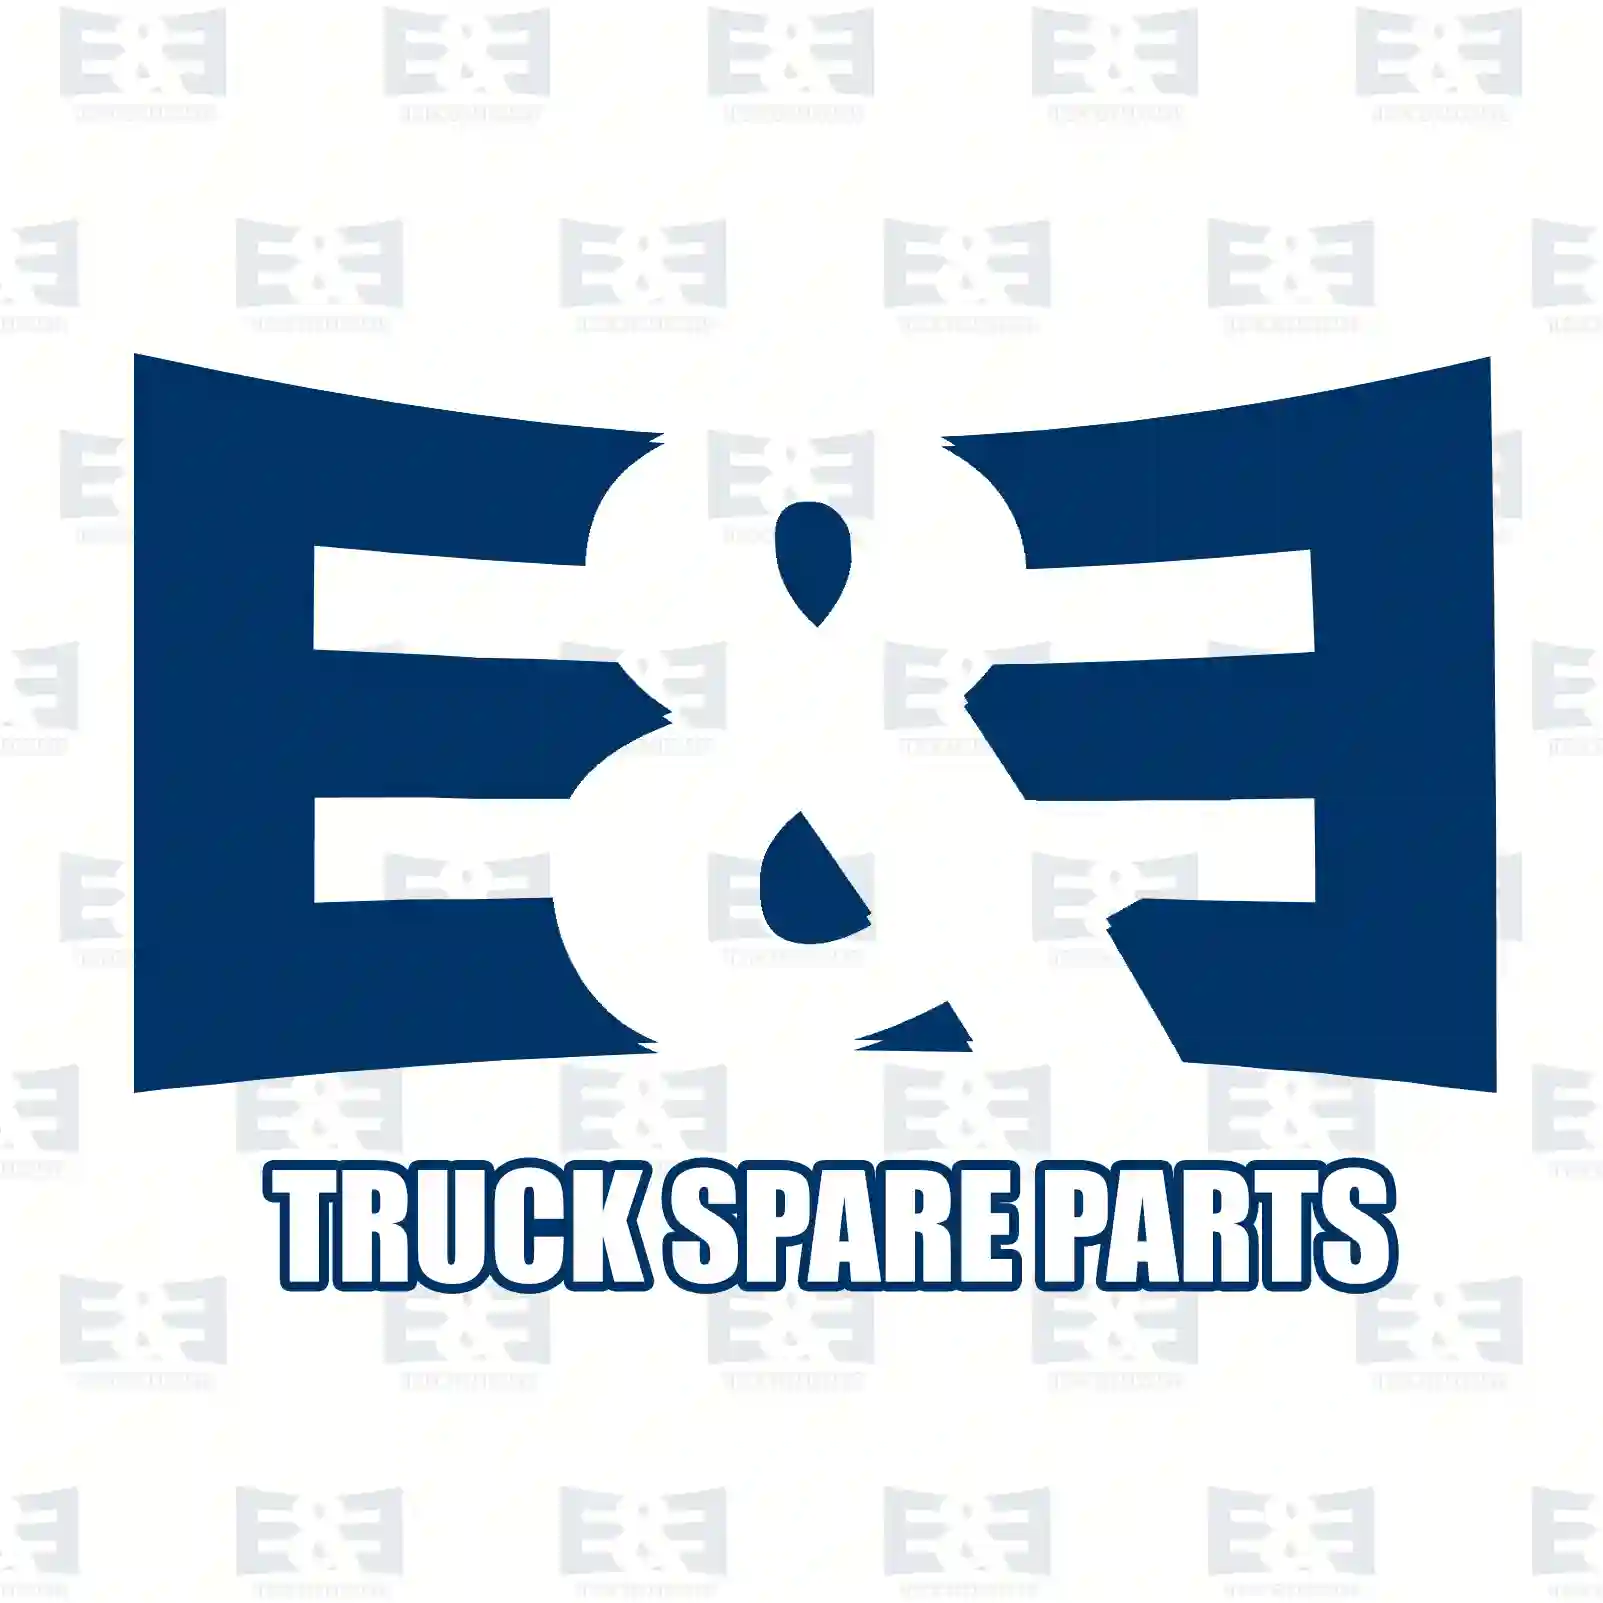 Bulb, 2E2290610, 1354876, 01121371, 607020008, 6200013, 620013, 6200696, 81259017069, 072601024100, 5003097003, 150109, 061375, 3600136107, 5350642313, 273584, 277830, 281830, 942086 ||  2E2290610 E&E Truck Spare Parts | Truck Spare Parts, Auotomotive Spare Parts Bulb, 2E2290610, 1354876, 01121371, 607020008, 6200013, 620013, 6200696, 81259017069, 072601024100, 5003097003, 150109, 061375, 3600136107, 5350642313, 273584, 277830, 281830, 942086 ||  2E2290610 E&E Truck Spare Parts | Truck Spare Parts, Auotomotive Spare Parts